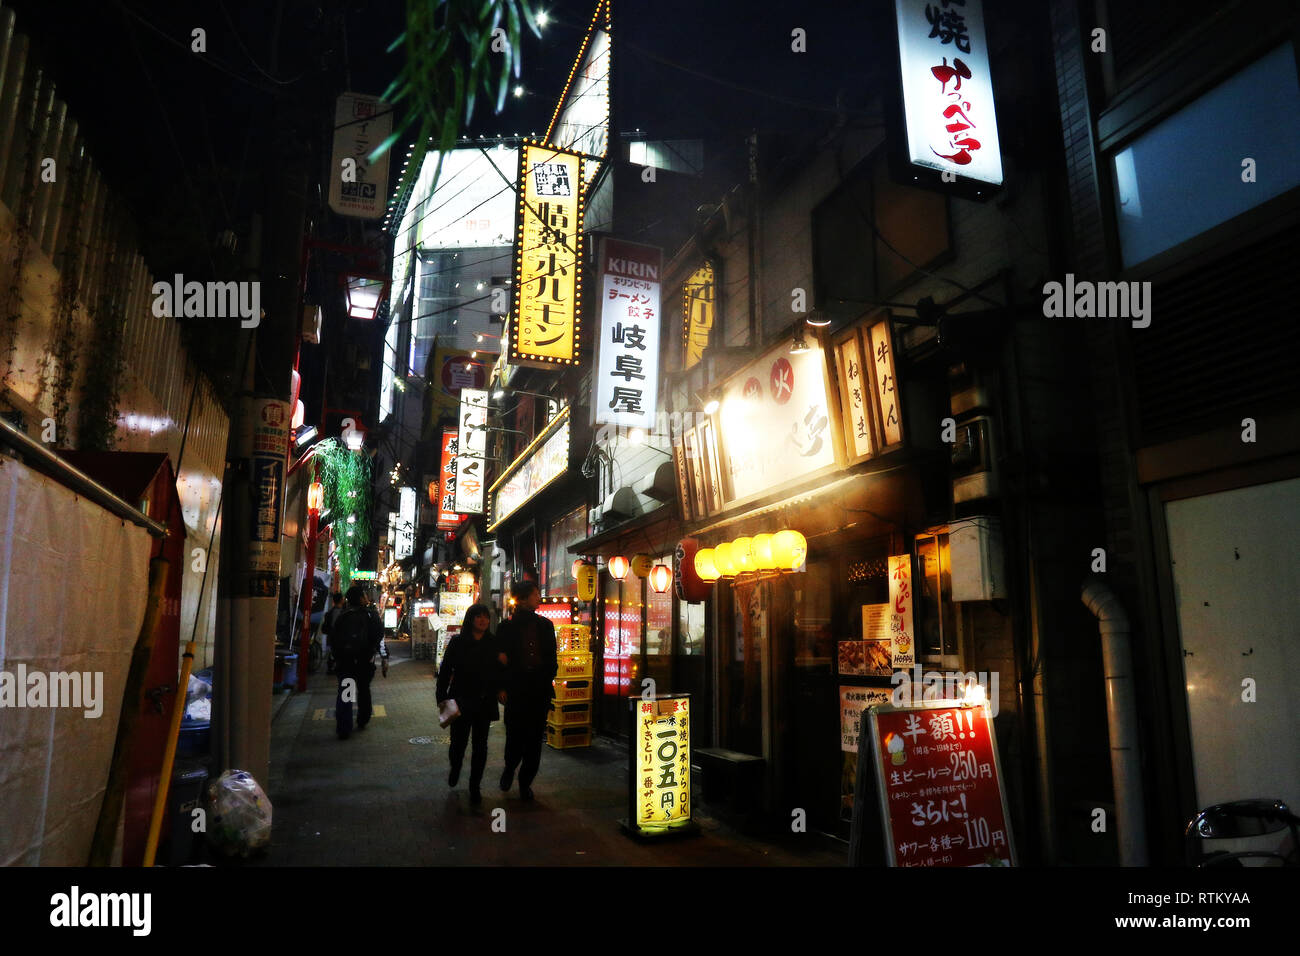 Shinjuku, Tokyo - December 16, 2016: Unidentified couple walking through a Shinjuku ward alley in Tokyo, Japan Stock Photo